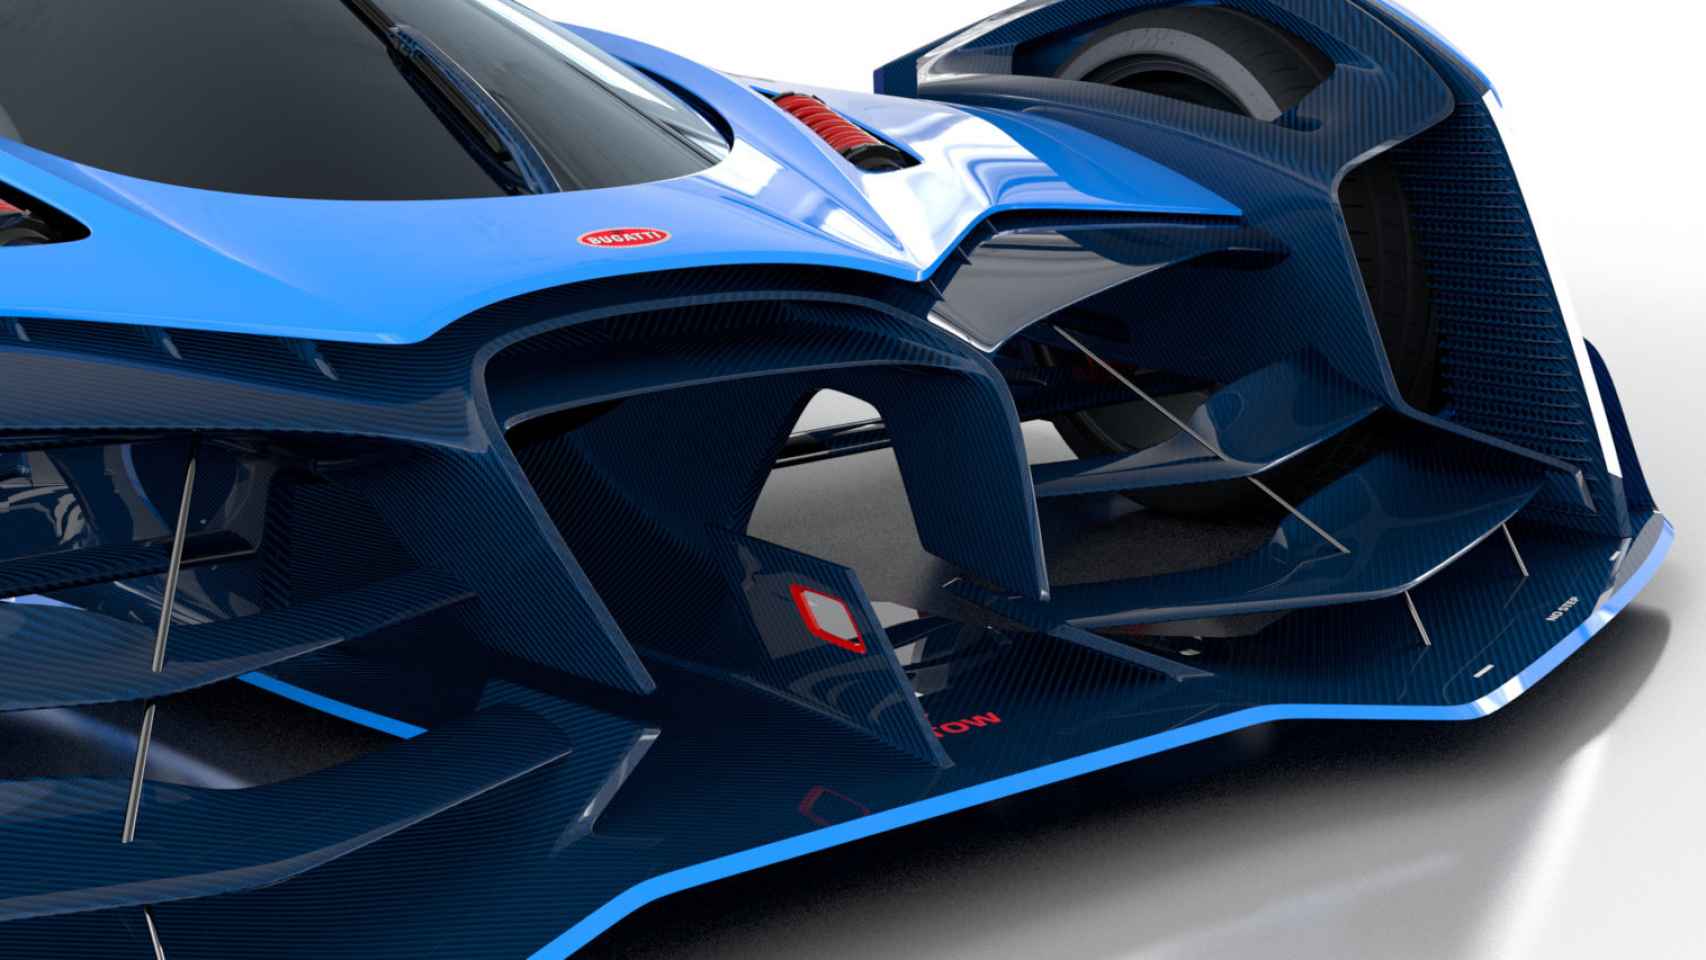 El frontal está inspirado en el de los Bugatti clásicos